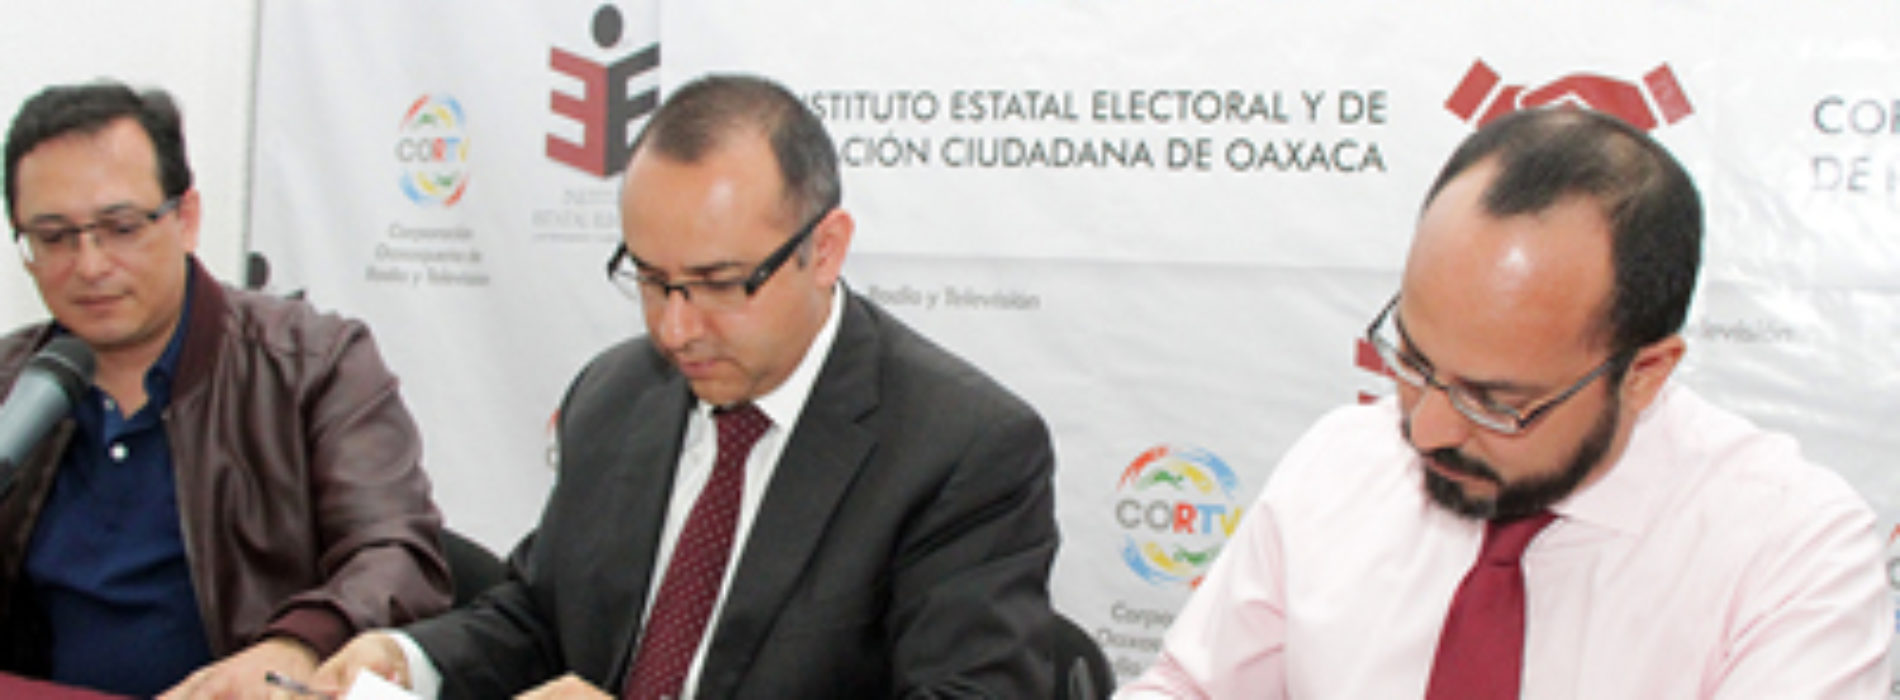 Firman convenio IEEPCO y CORTV para garantizar ejercicio transparente del proceso electoral 2016